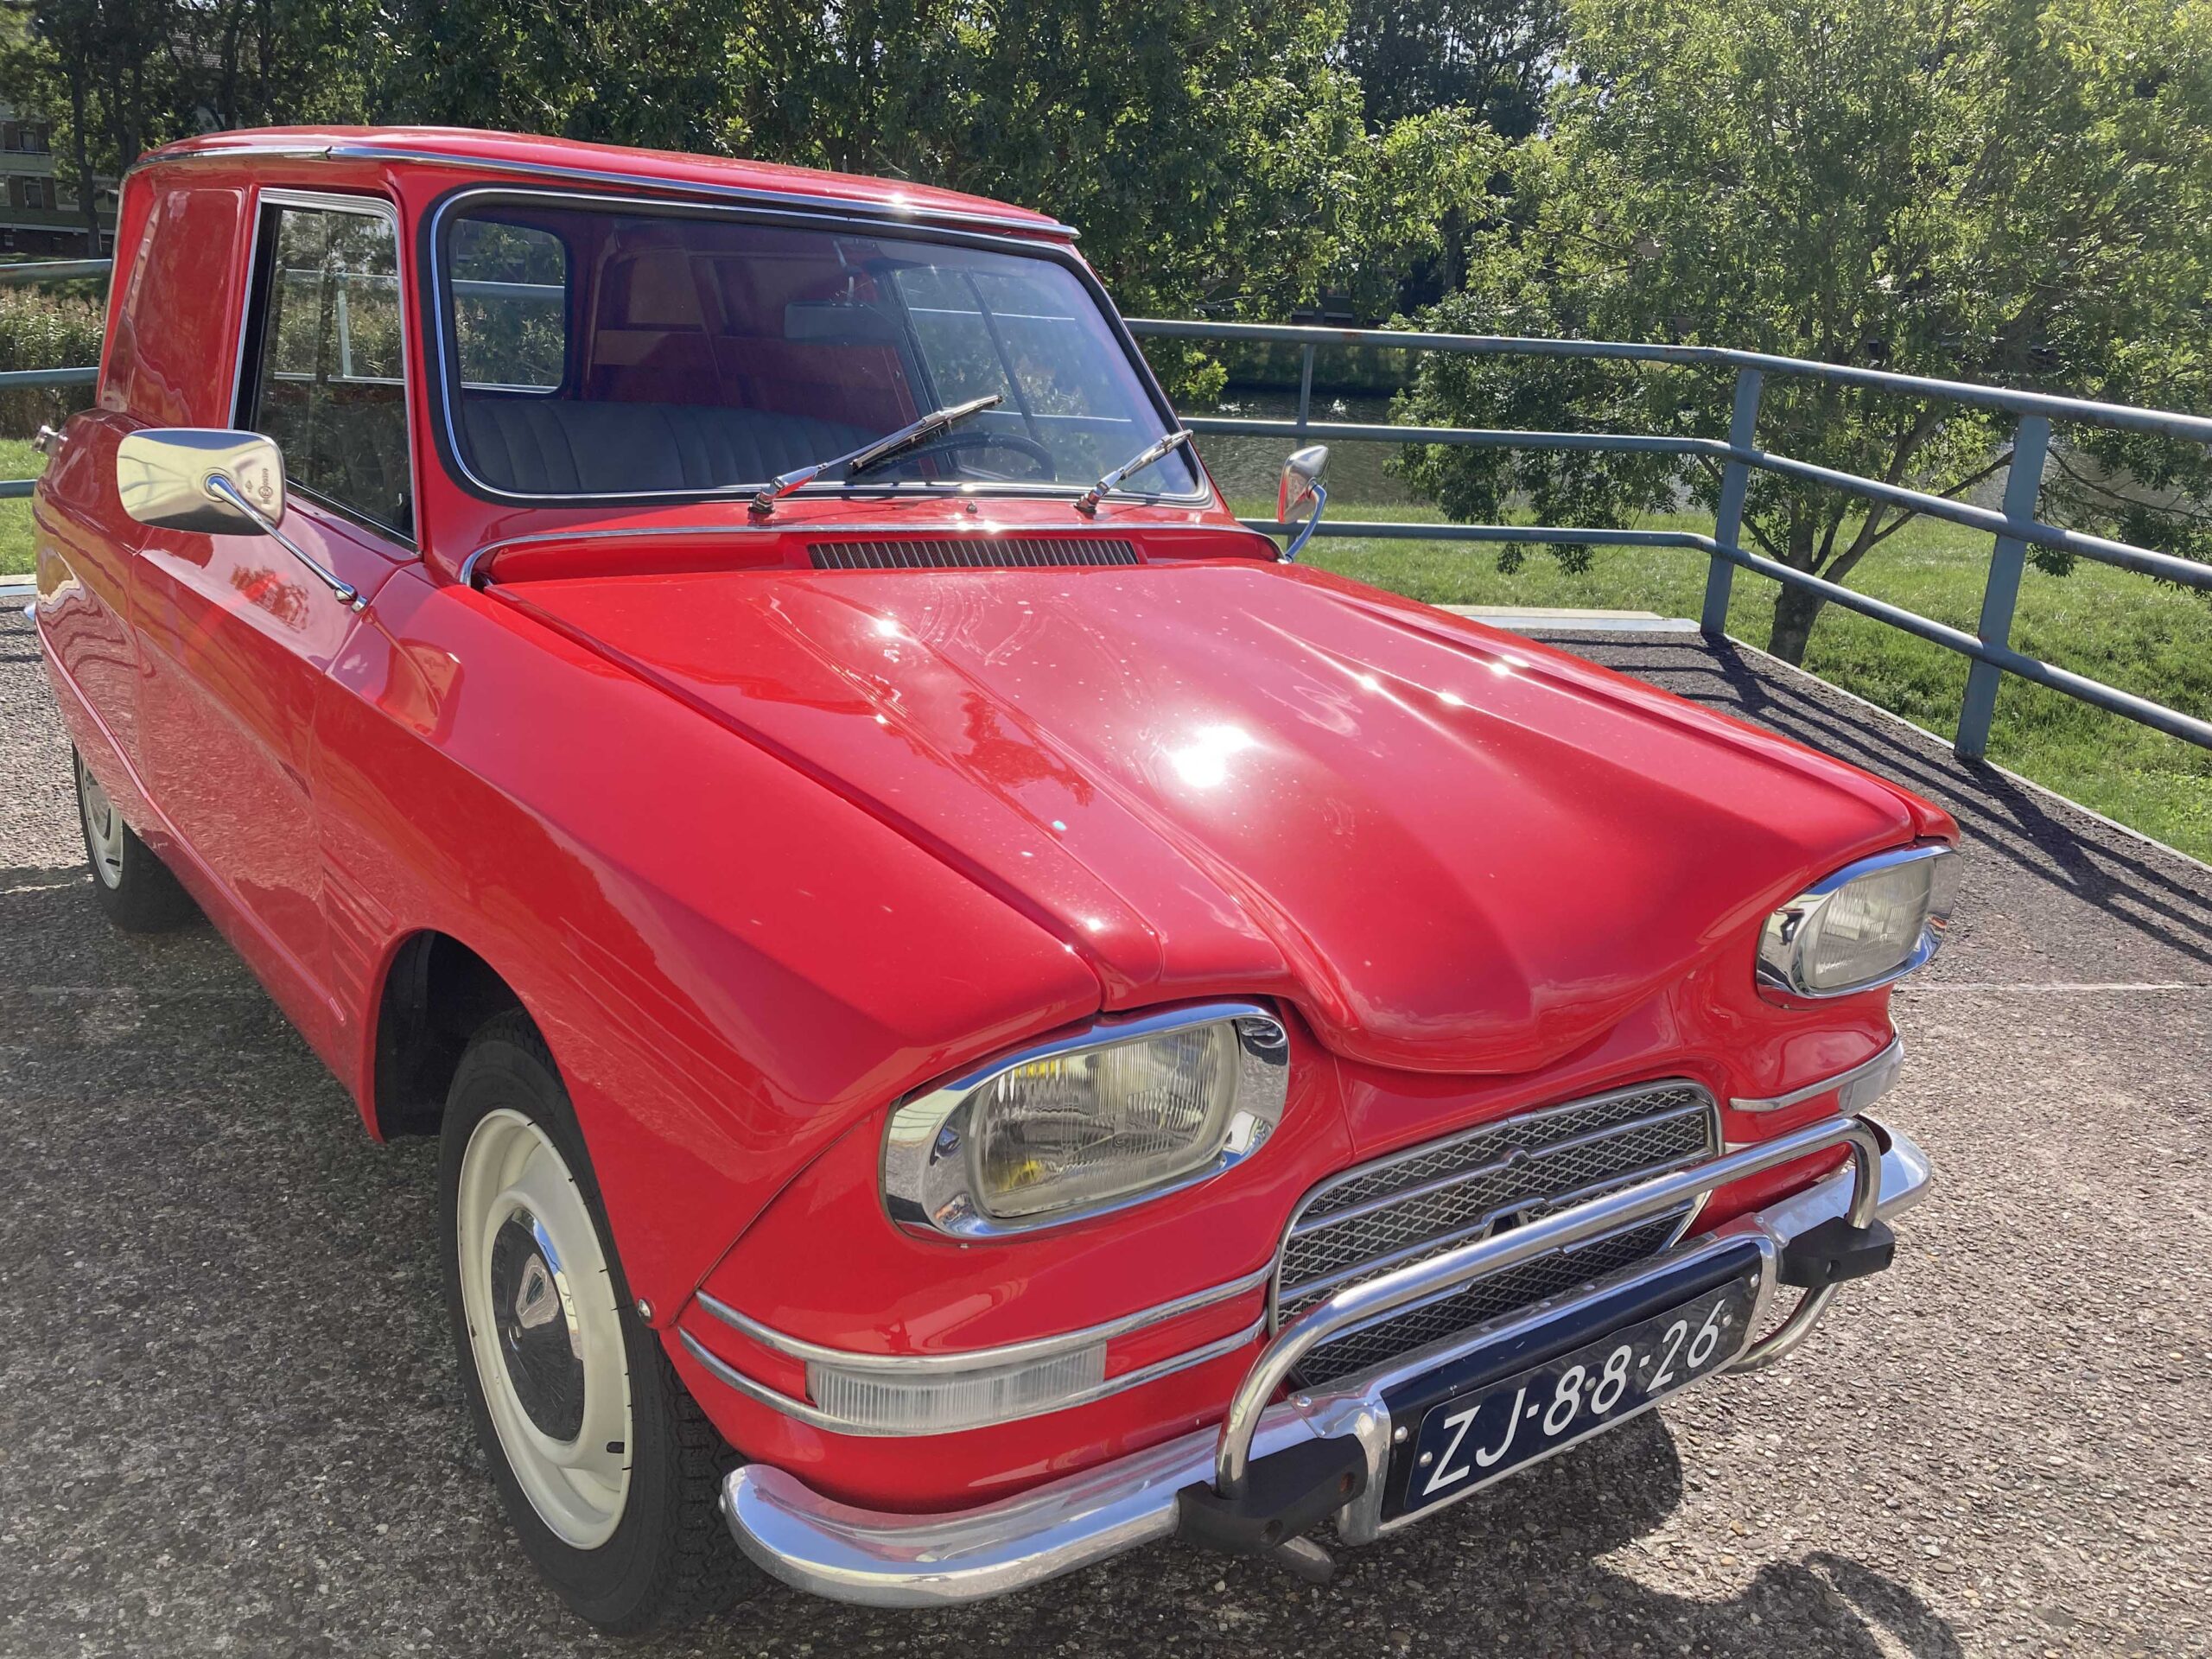 Bâche Citroën Ami 6 berline (1961-1969) semi sur mesure extérieure - My  Housse